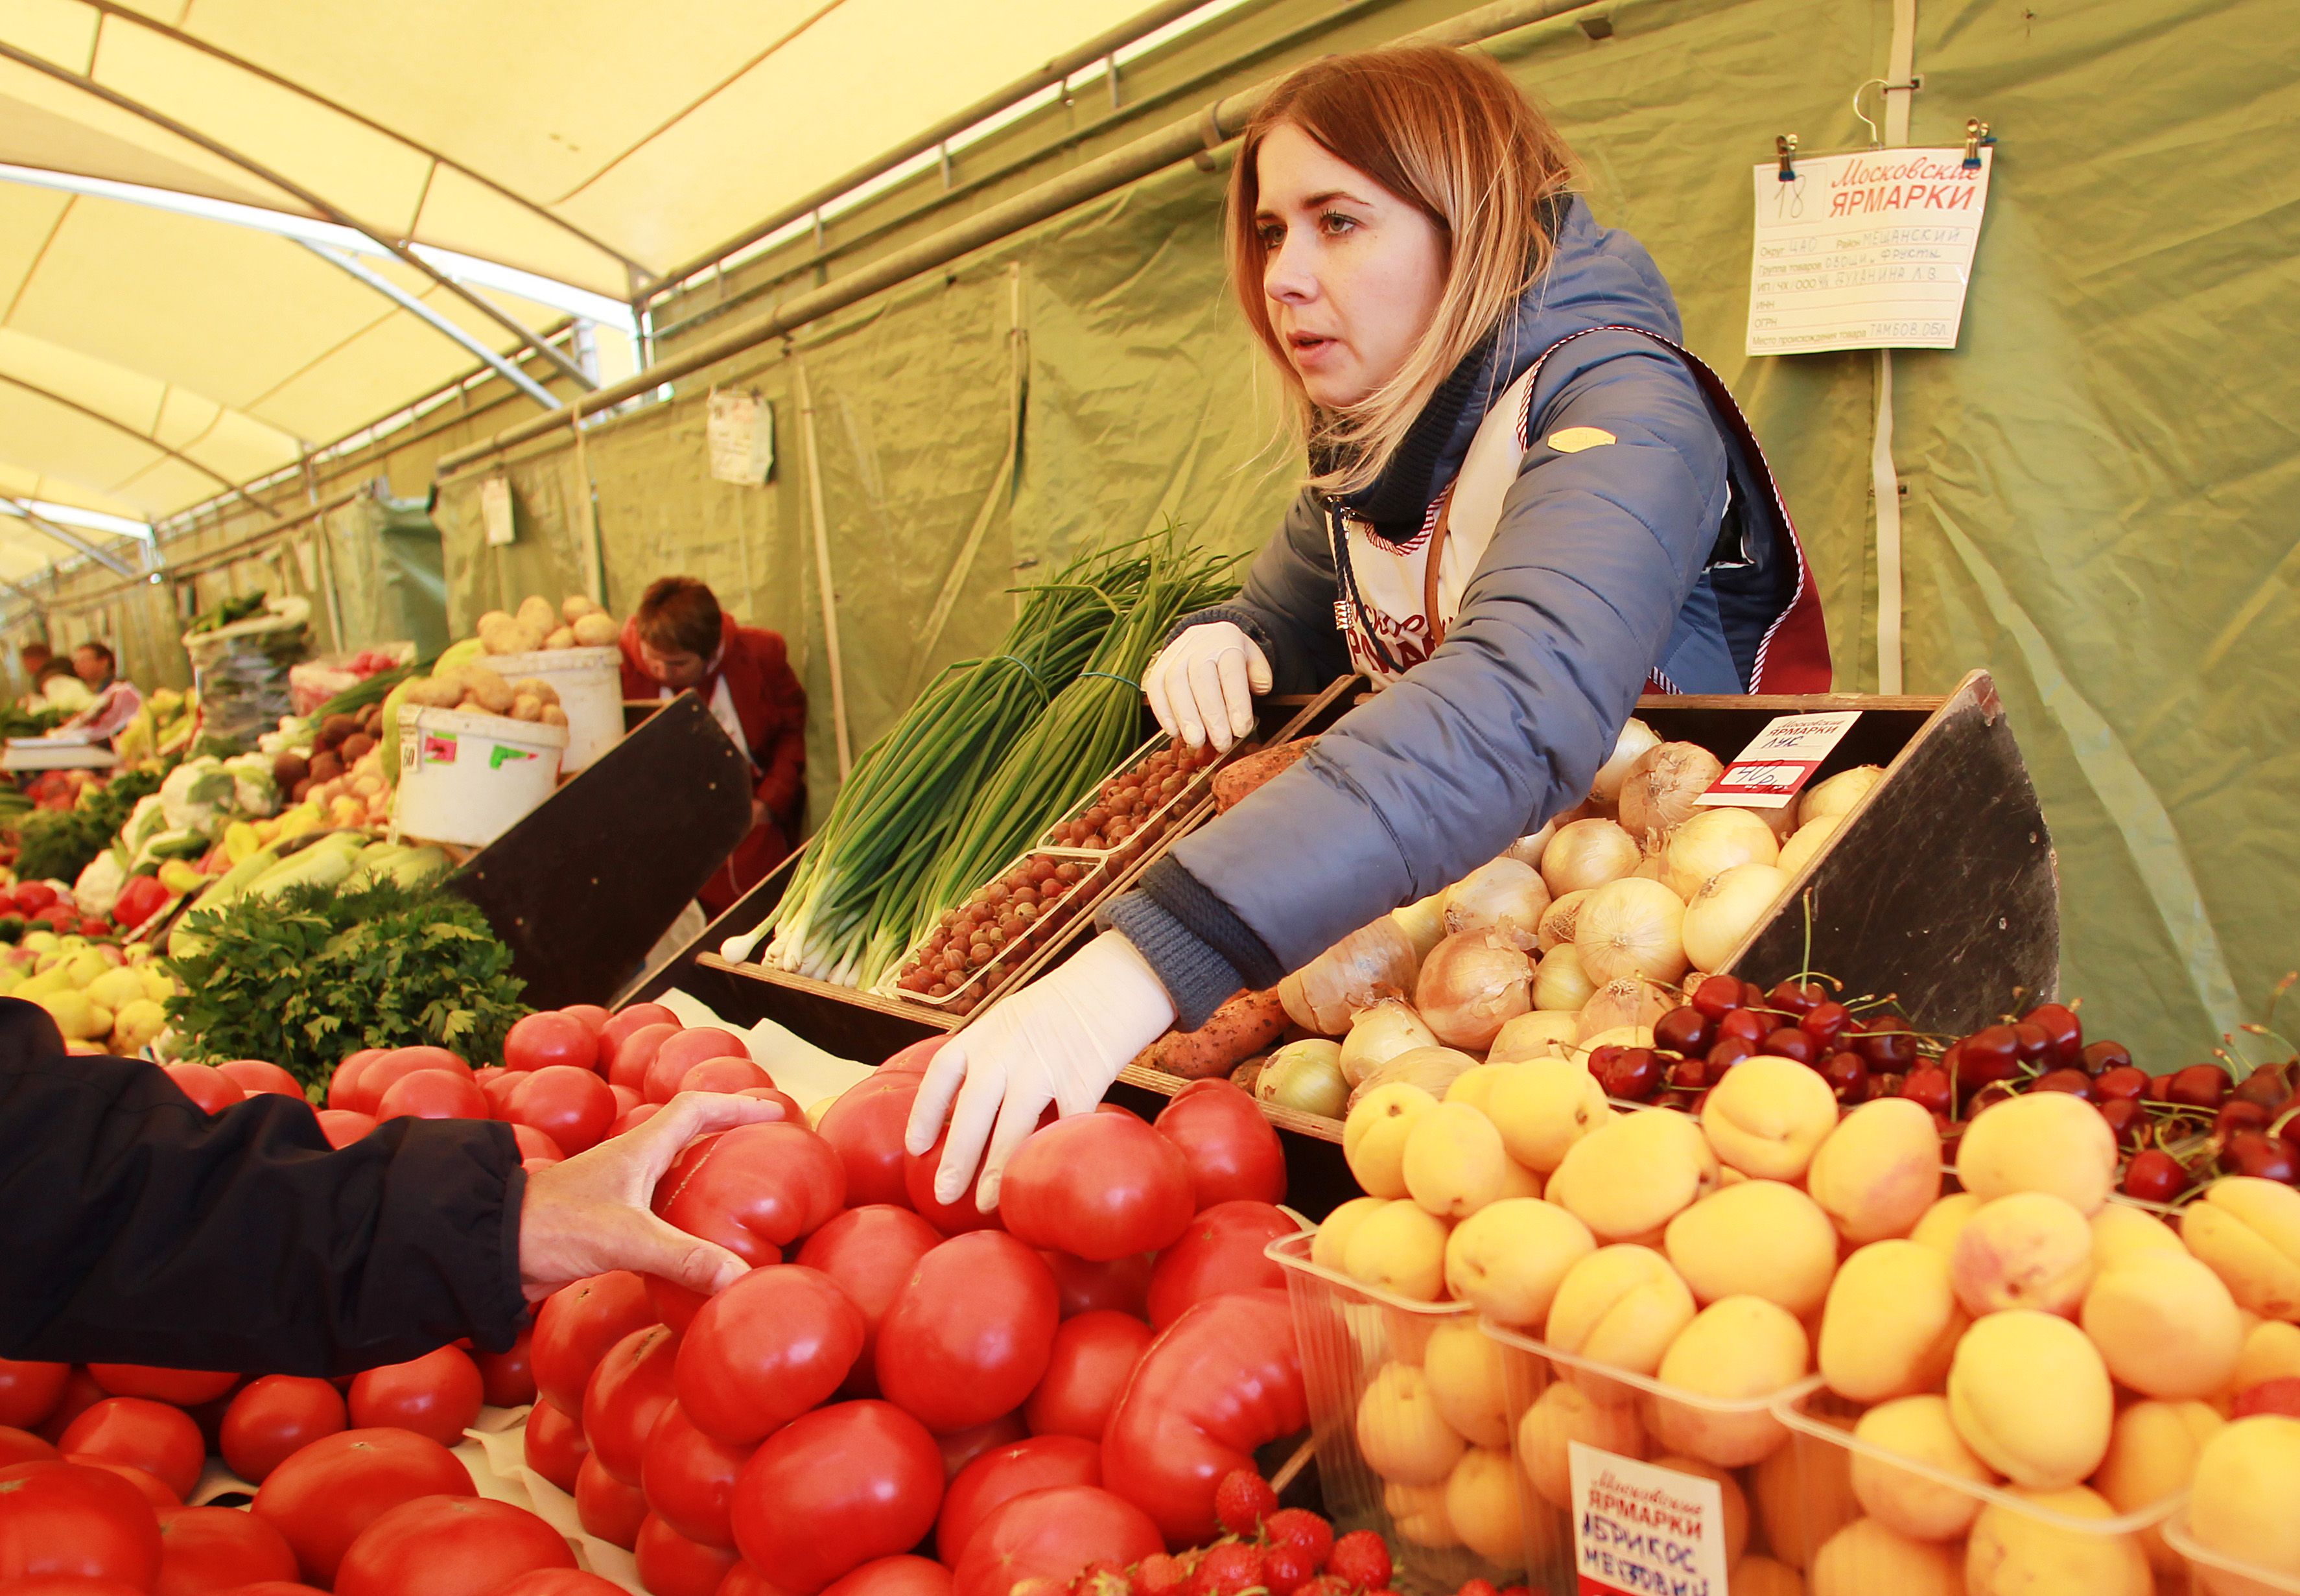 Жители столицы могут приобрести свежие фермерские продукты более чем из 40 российских регионов. Фото: архив, «Вечерняя Москва»